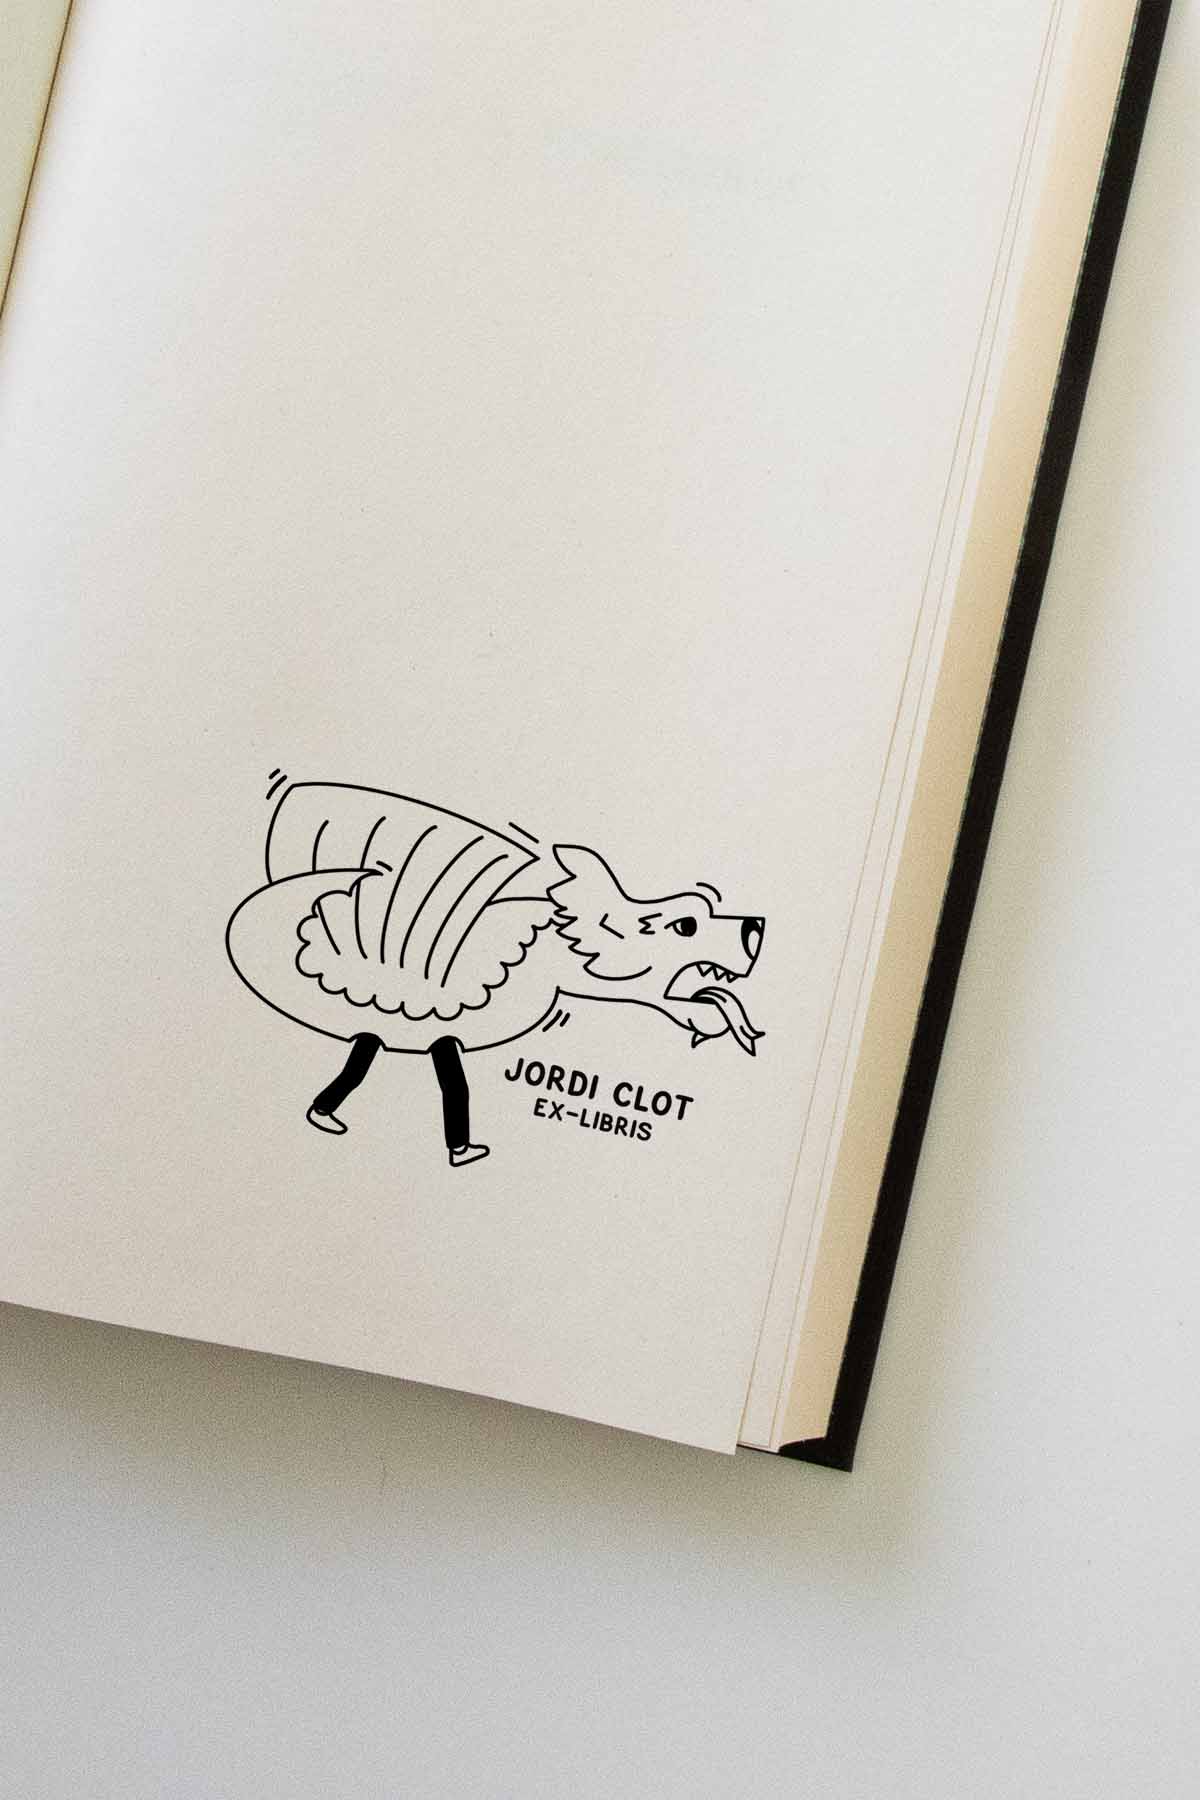 Portadilla de libro estampada con sello exlibris de un dragón del folclore catalán